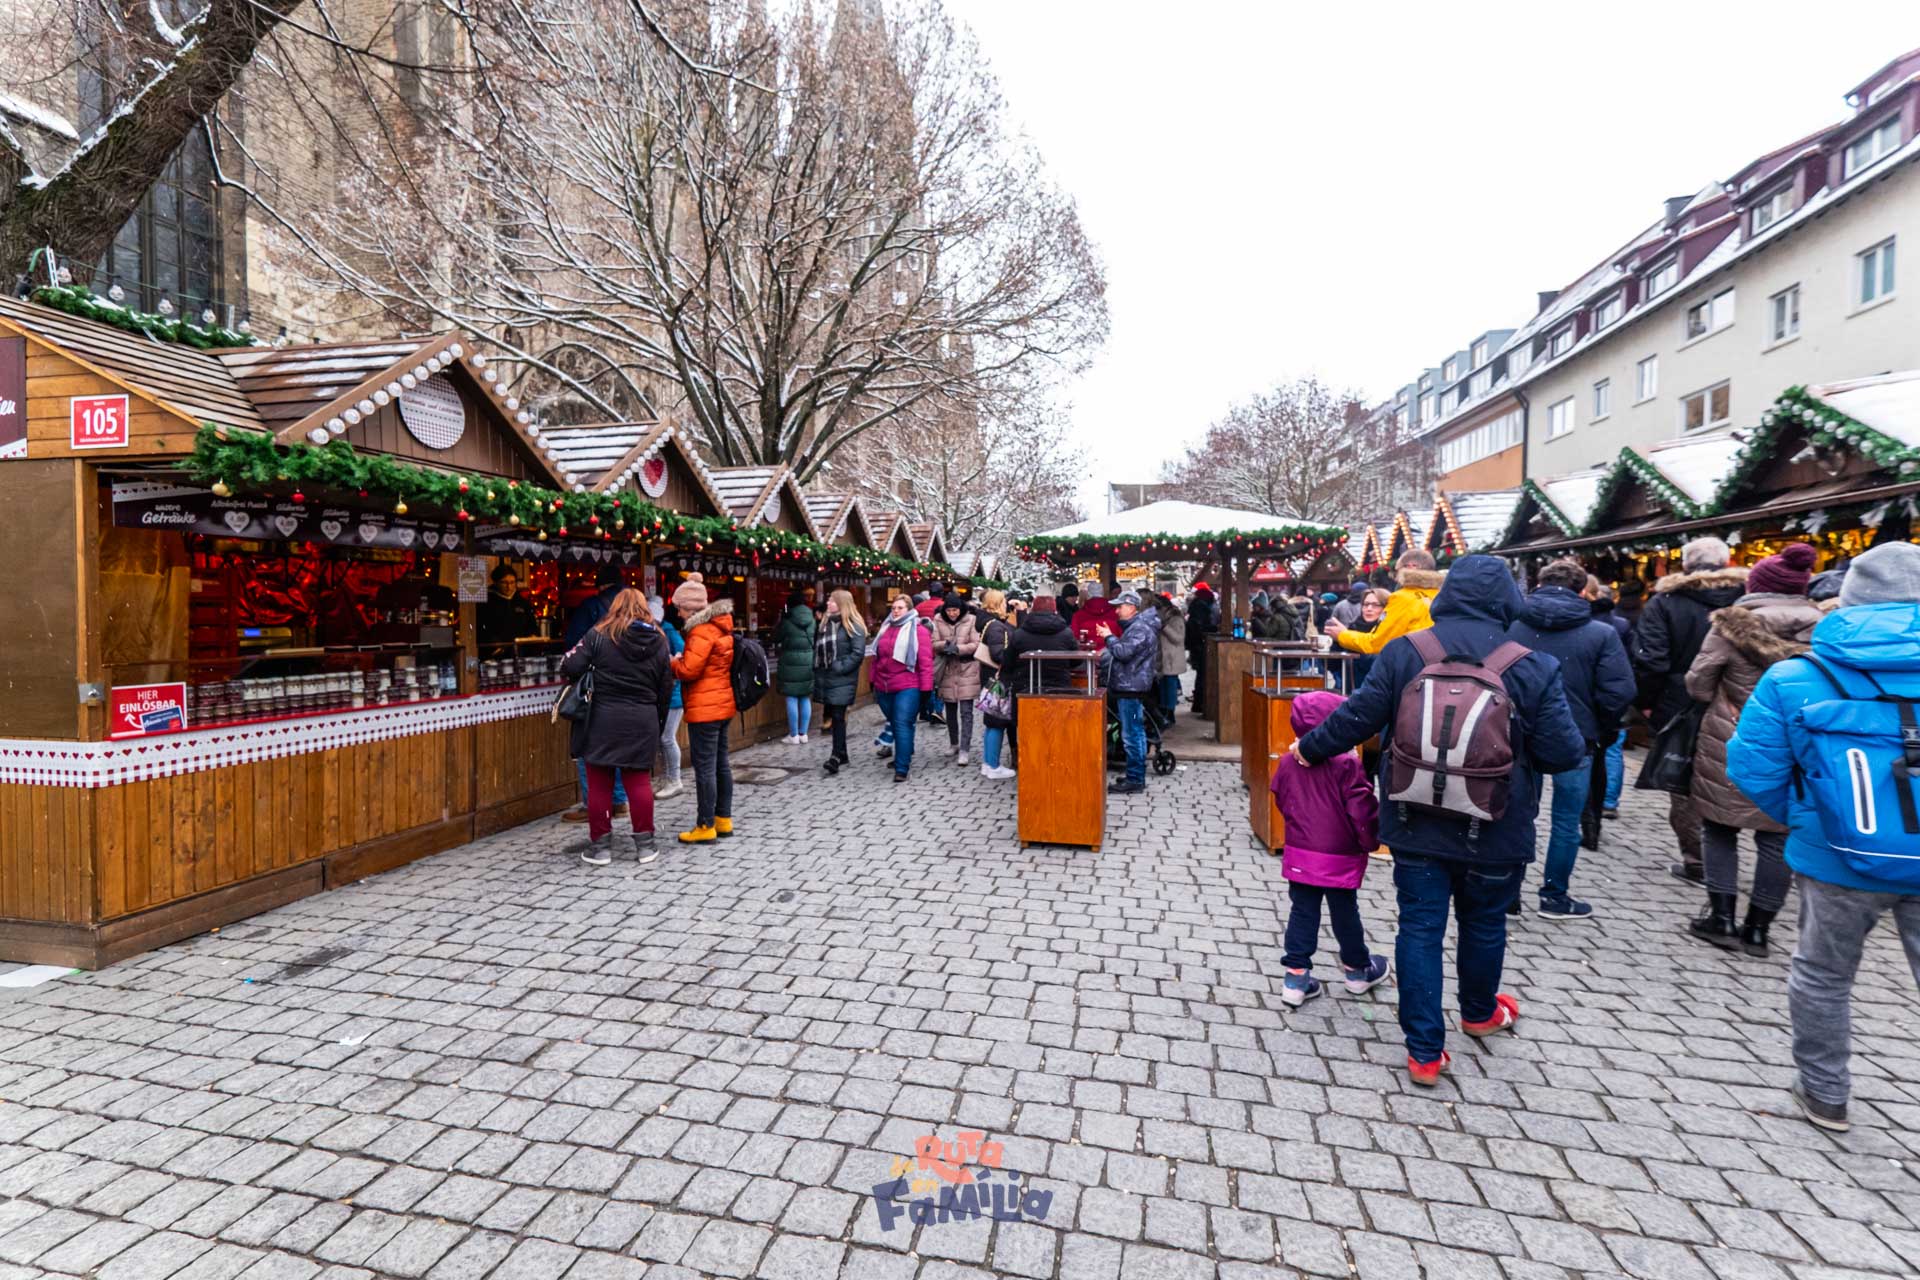 Ulm en Navidad, el mercado navideño alemán dedicado a los cuentos